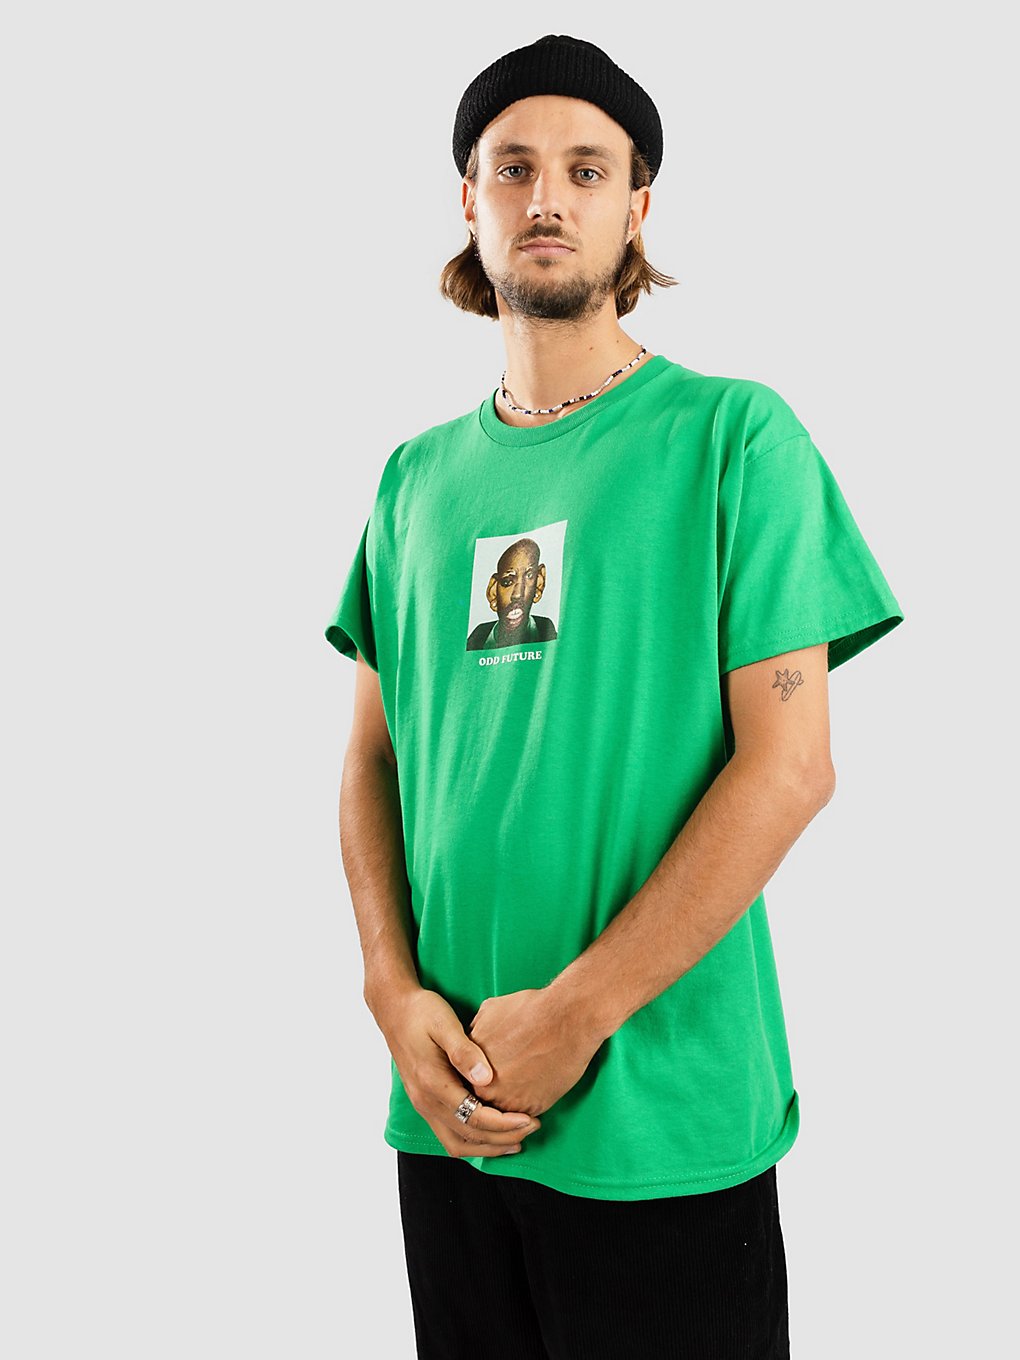 Odd Future Face T-Shirt green kaufen